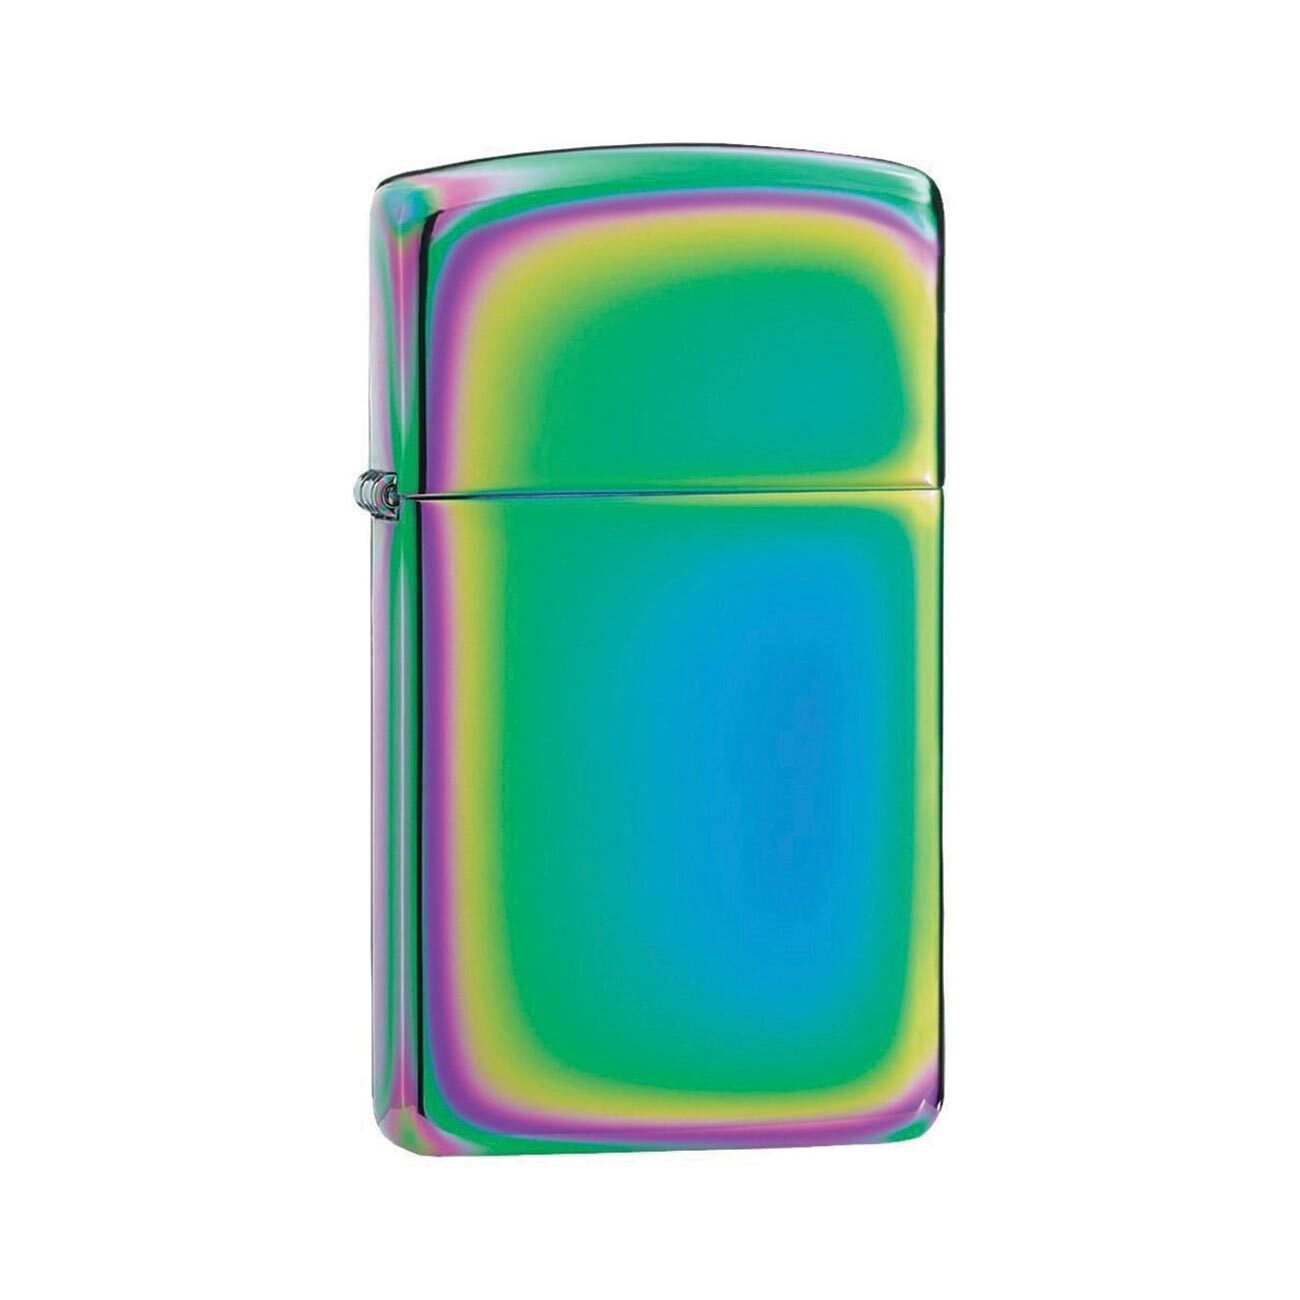 Zippo Windproof Lighter Slim Multi Color